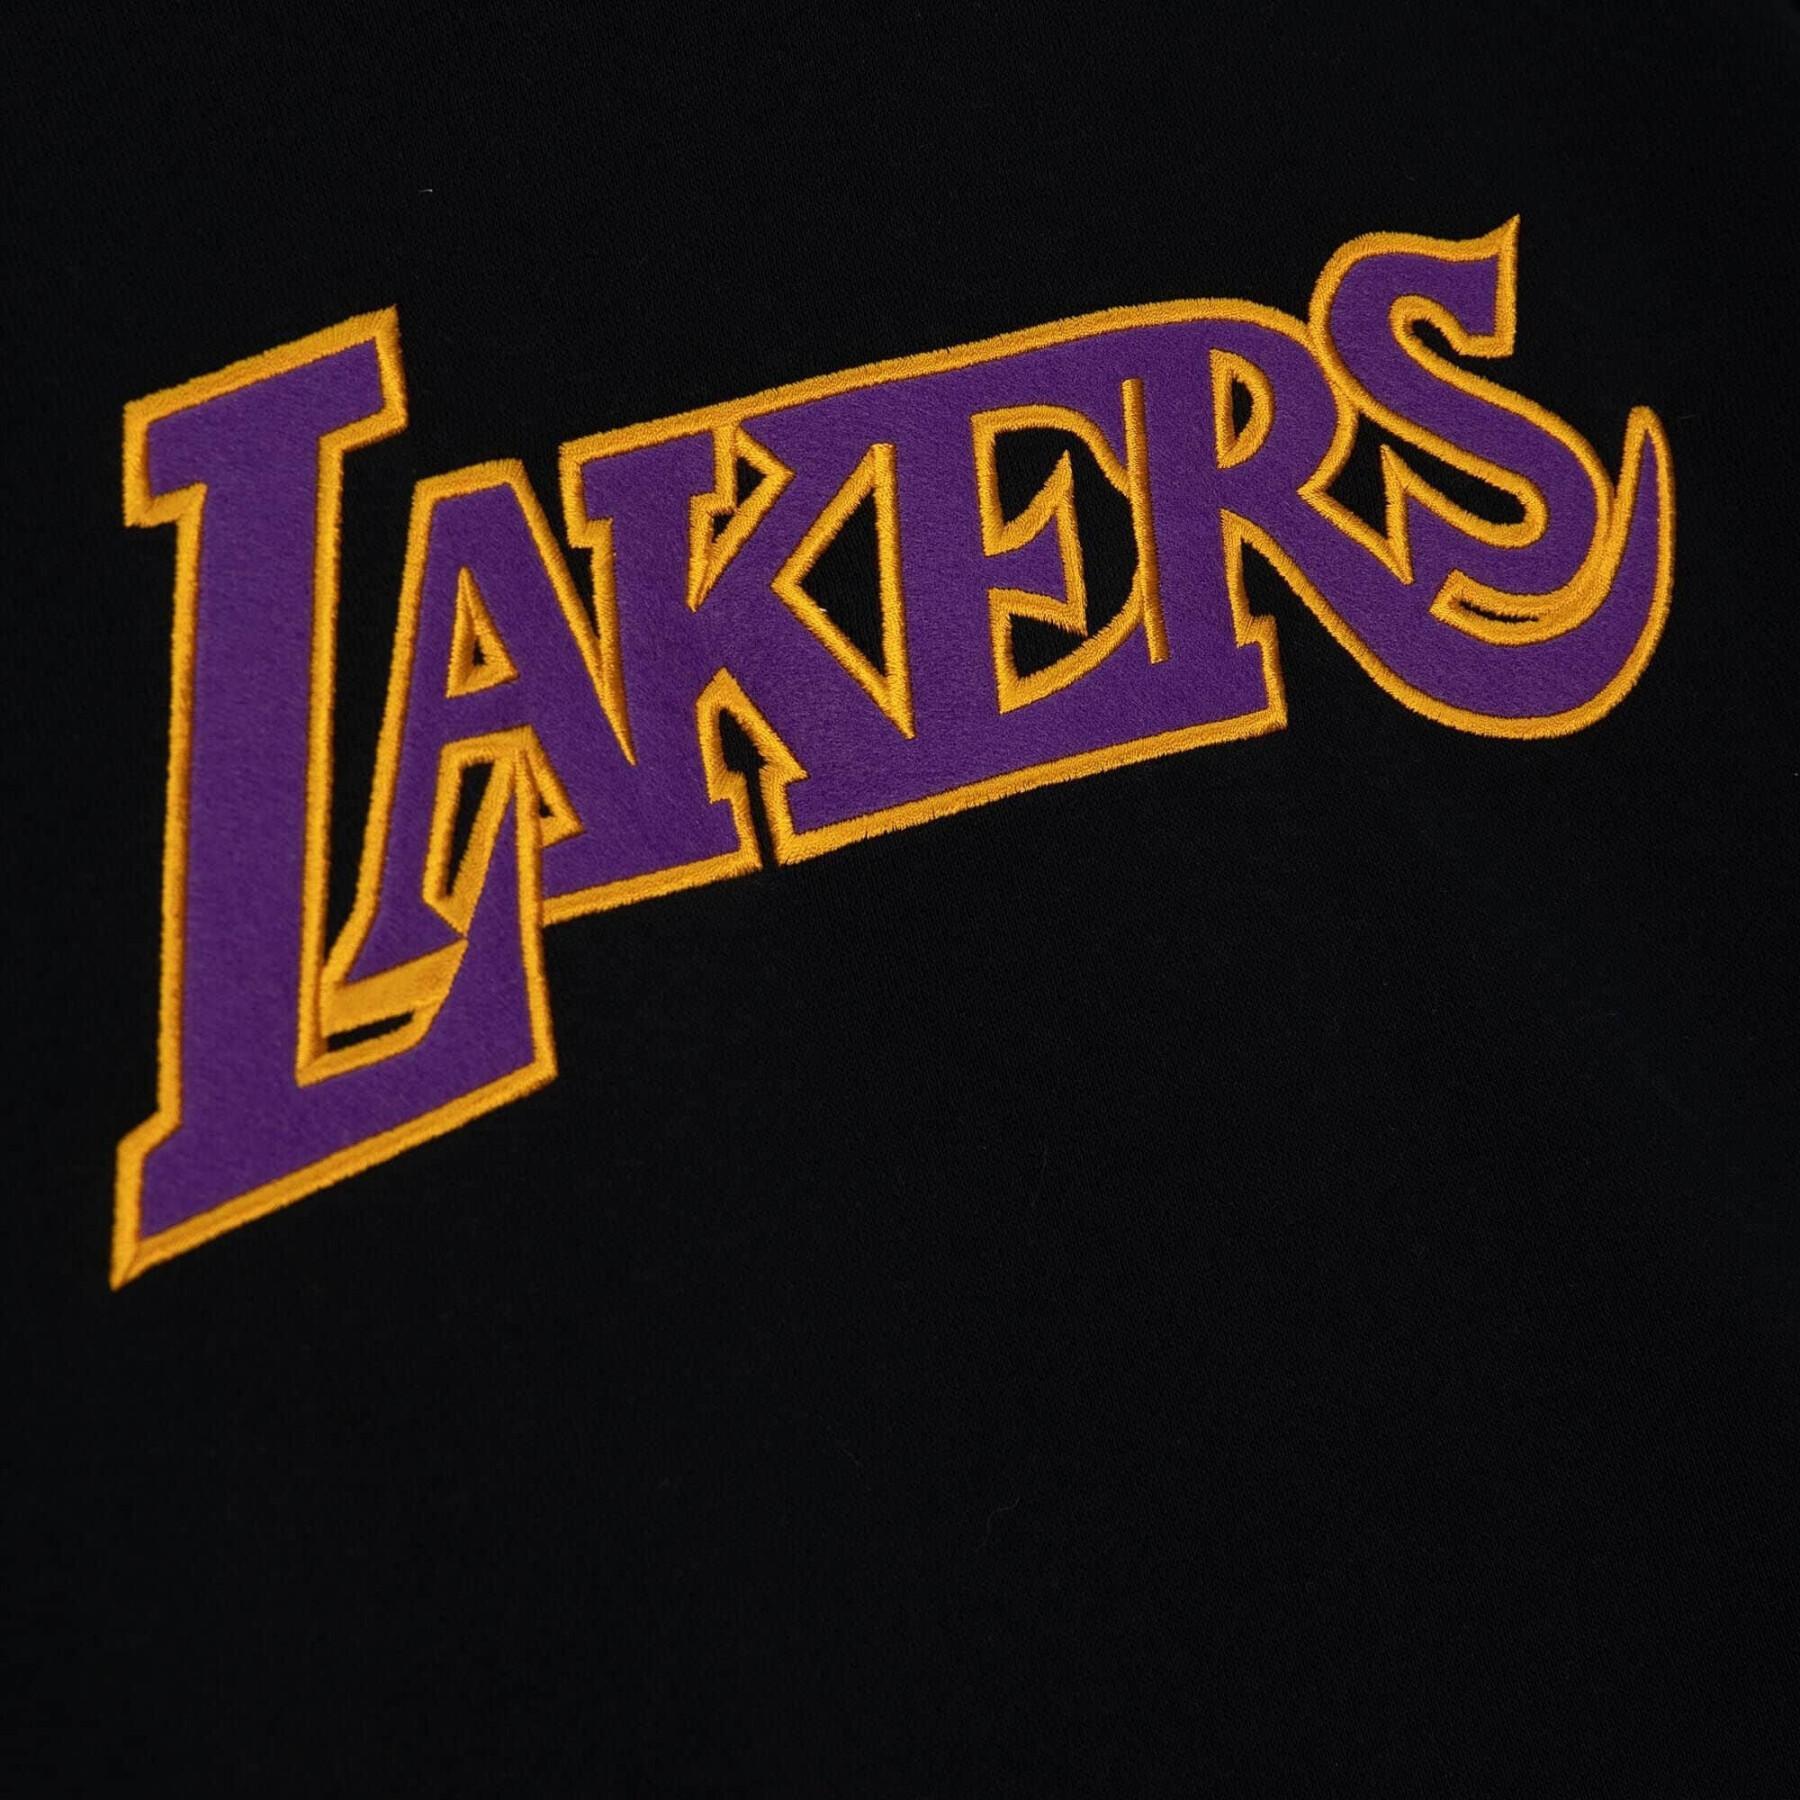 Sweatshirt z kapturem Los Angeles Lakers Origins